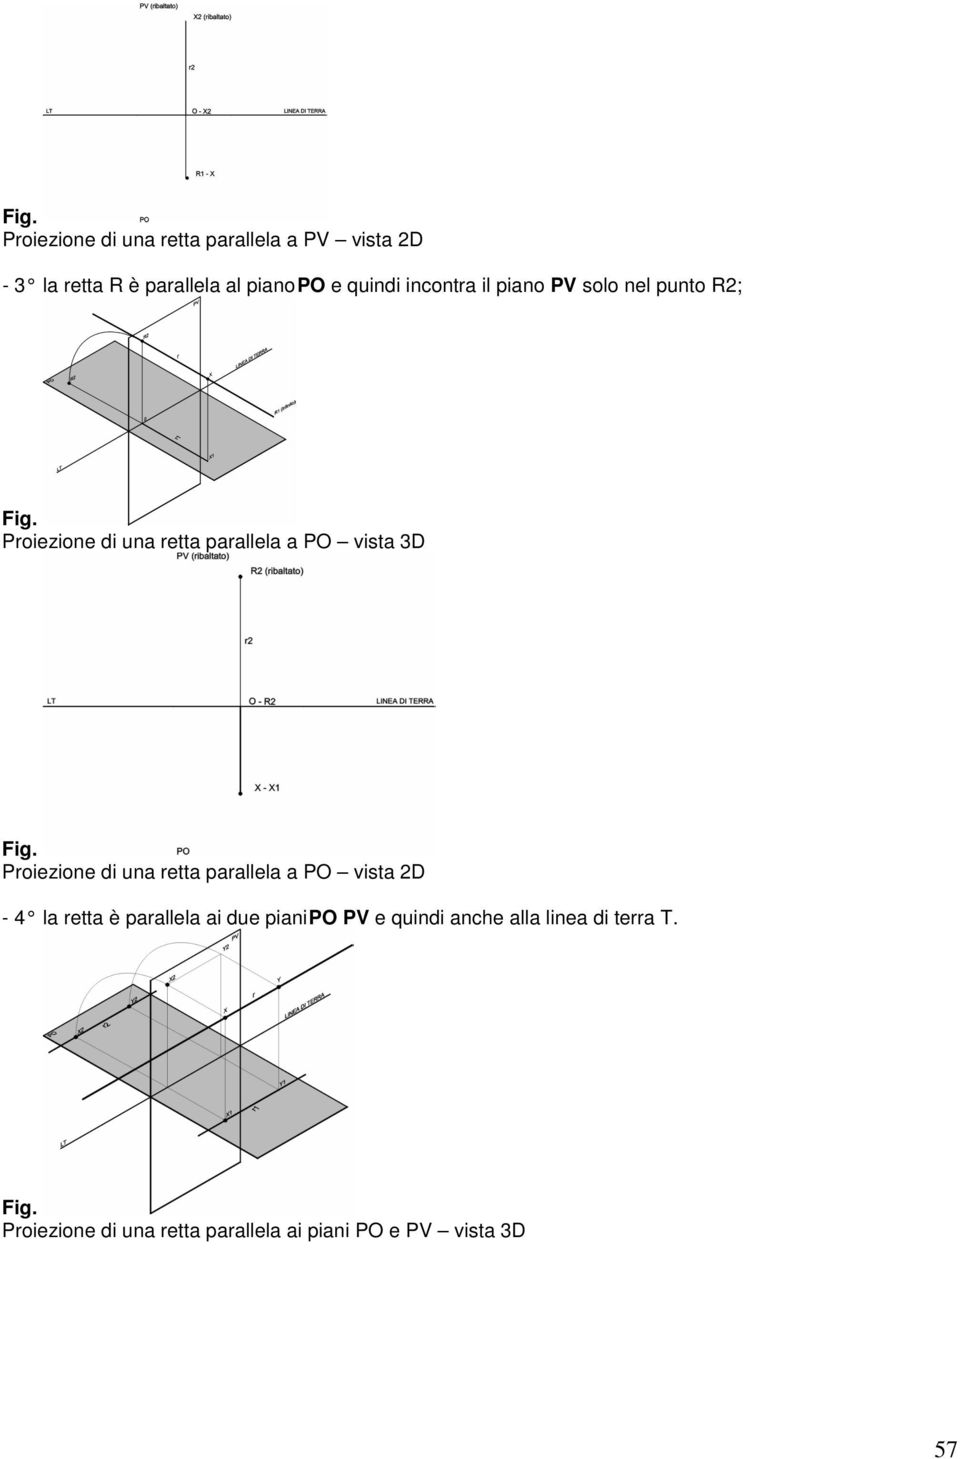 3D Proiezione di una retta parallela a PO vista 2D - 4 la retta è parallela ai due piani PO